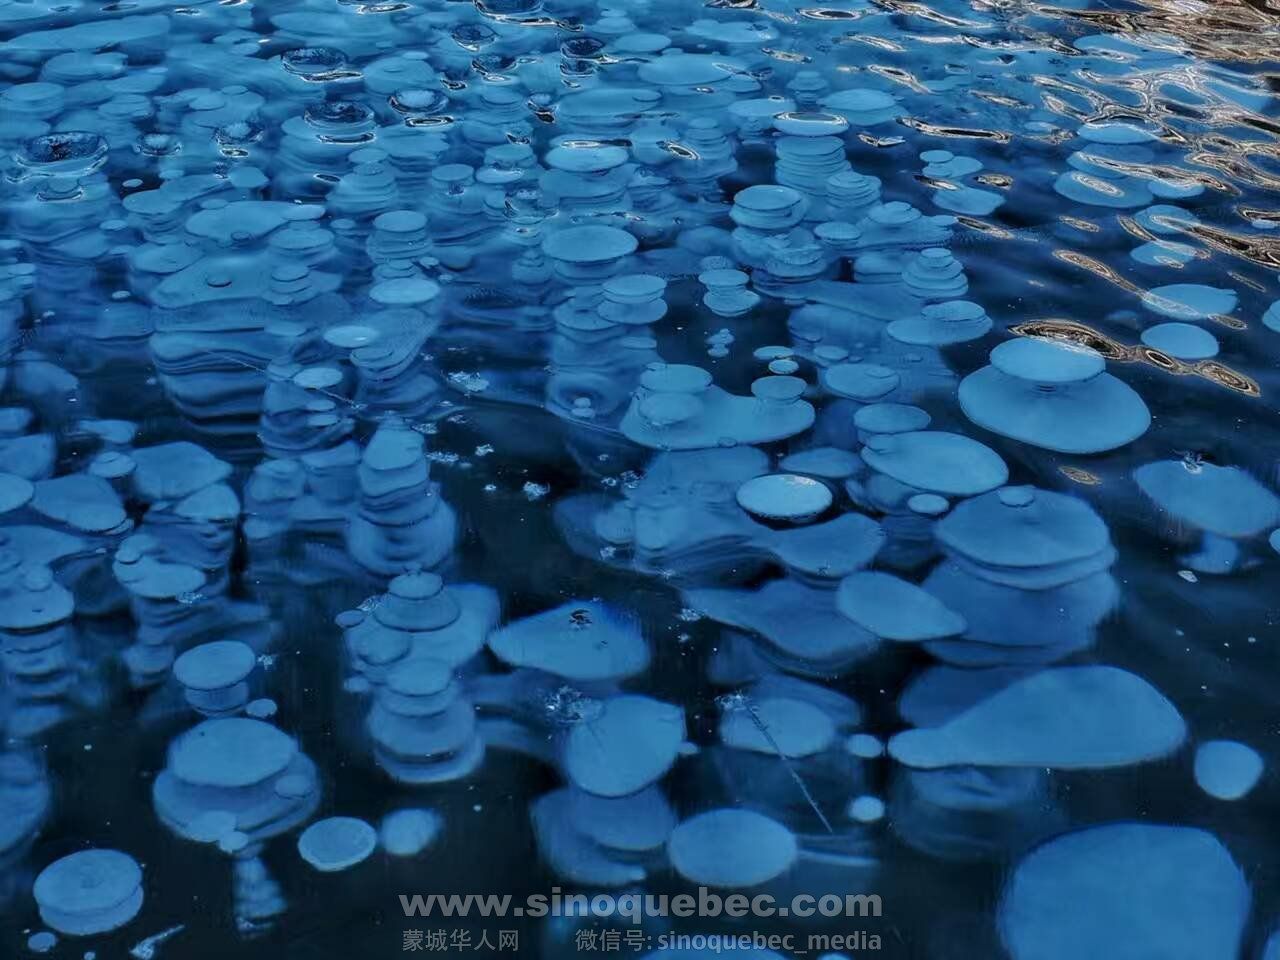 Freezing bubbles